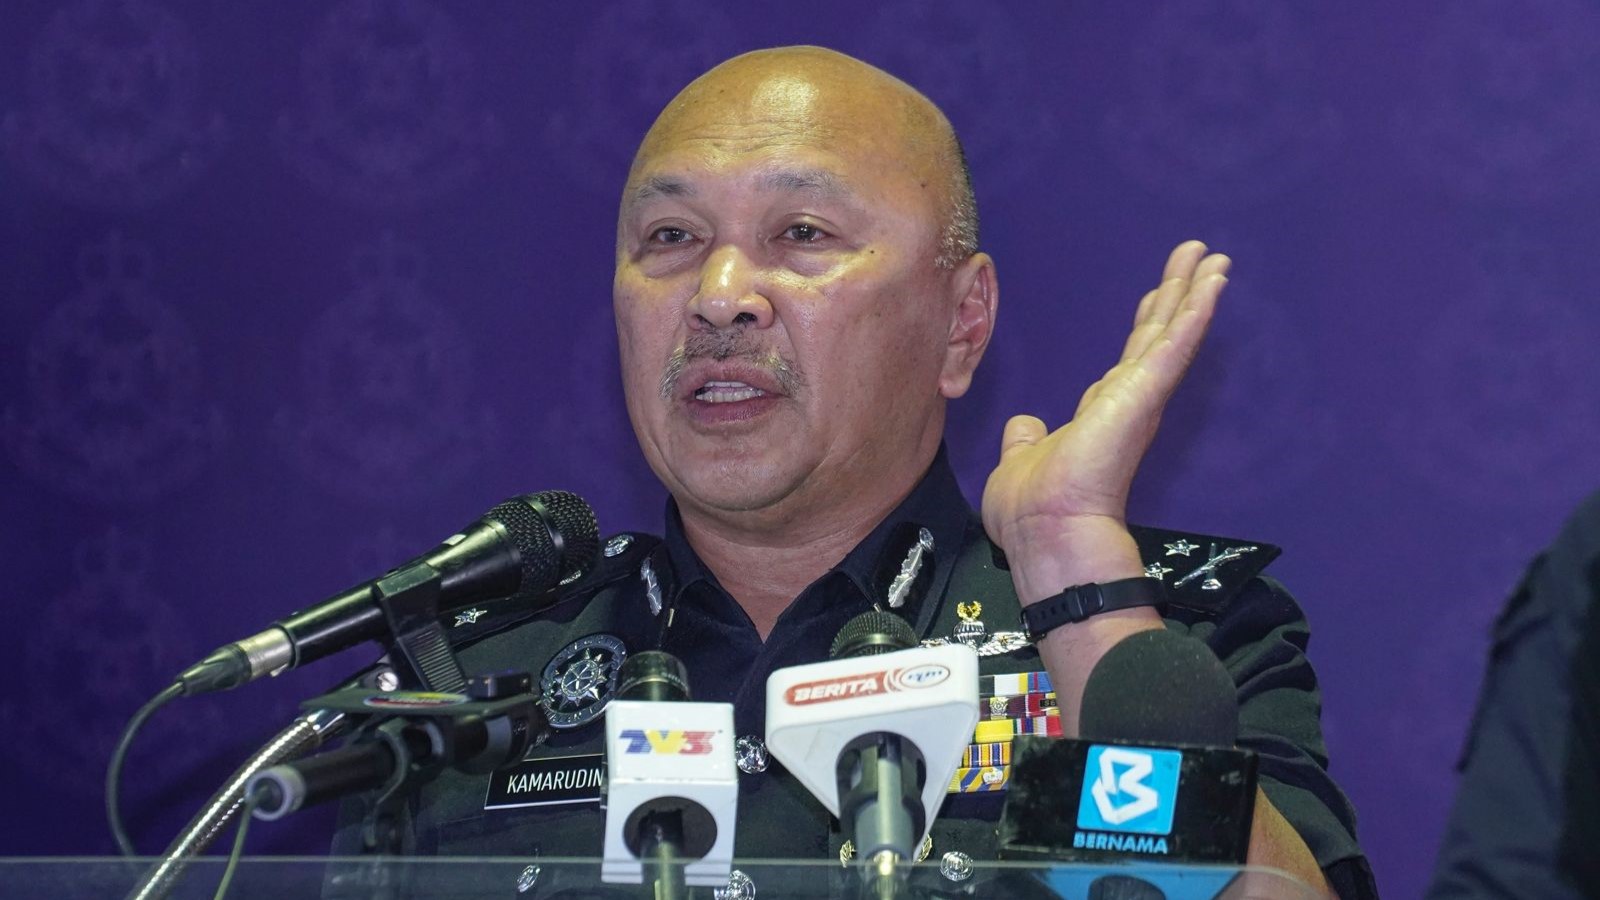 Ketua sindiket dadah di Sabah bergelar 'Datuk' akan didakwa